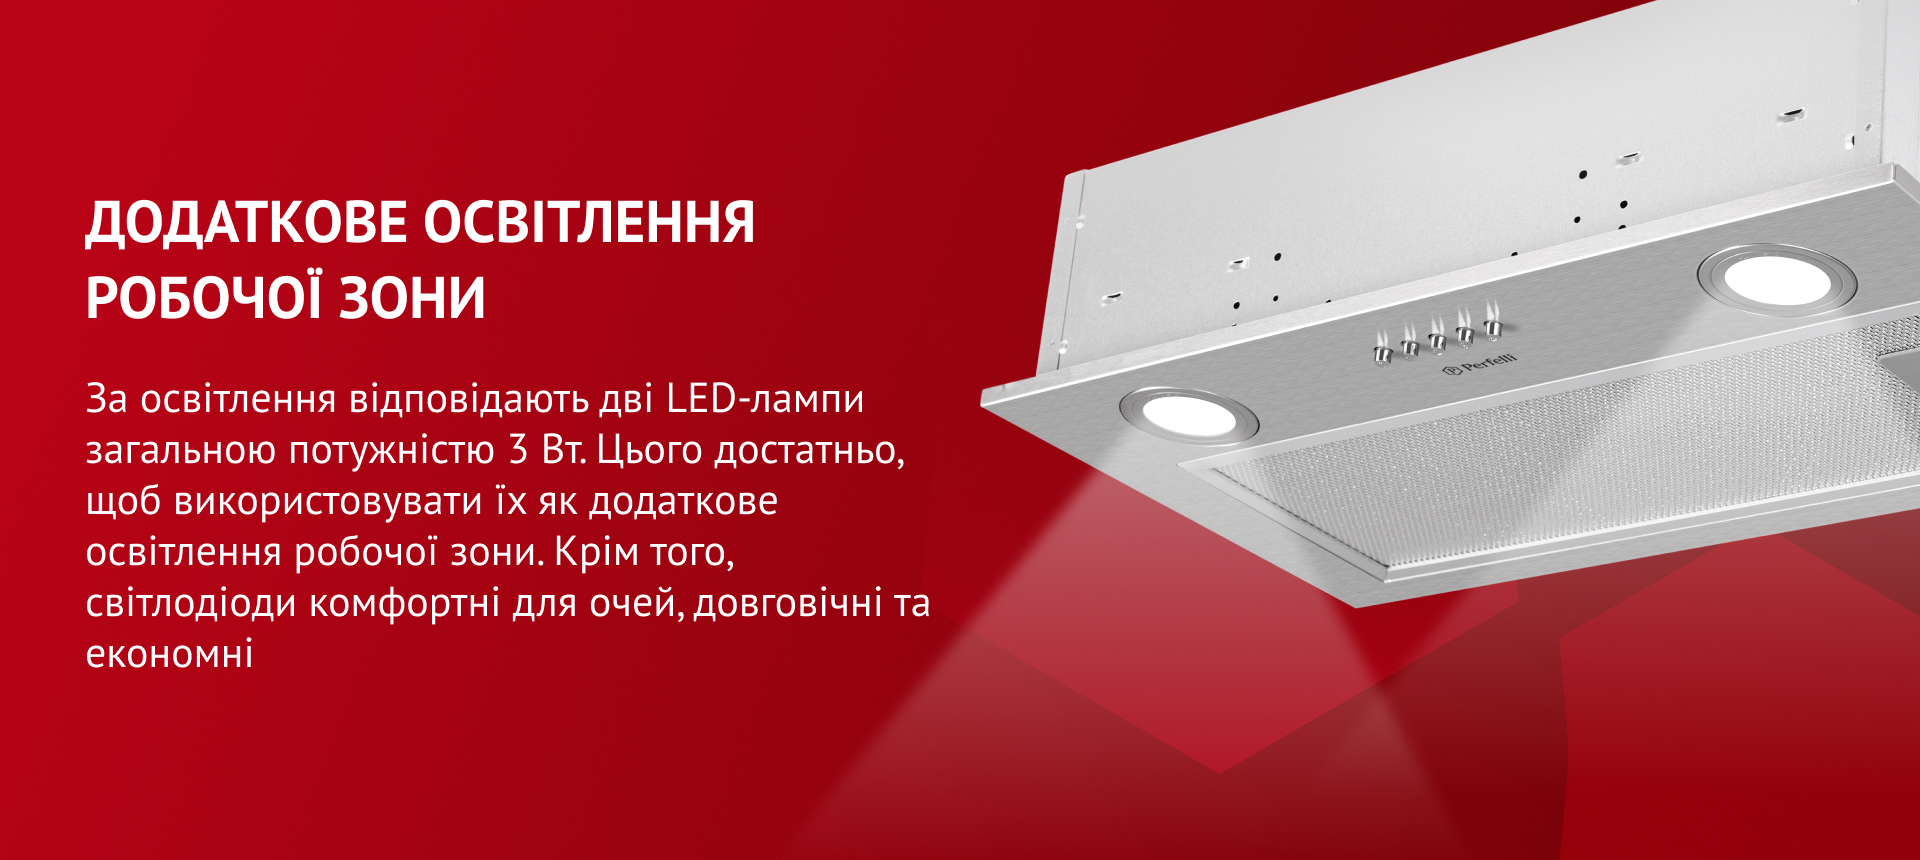 За освітлення відповідають дві LED-лампи загальною потужністю 3 Вт. Цього достатньо, щоб використовувати їх як додаткове освітлення робочої зони. Крім того, світлодіоди комфортні для очей, довговічні та економні